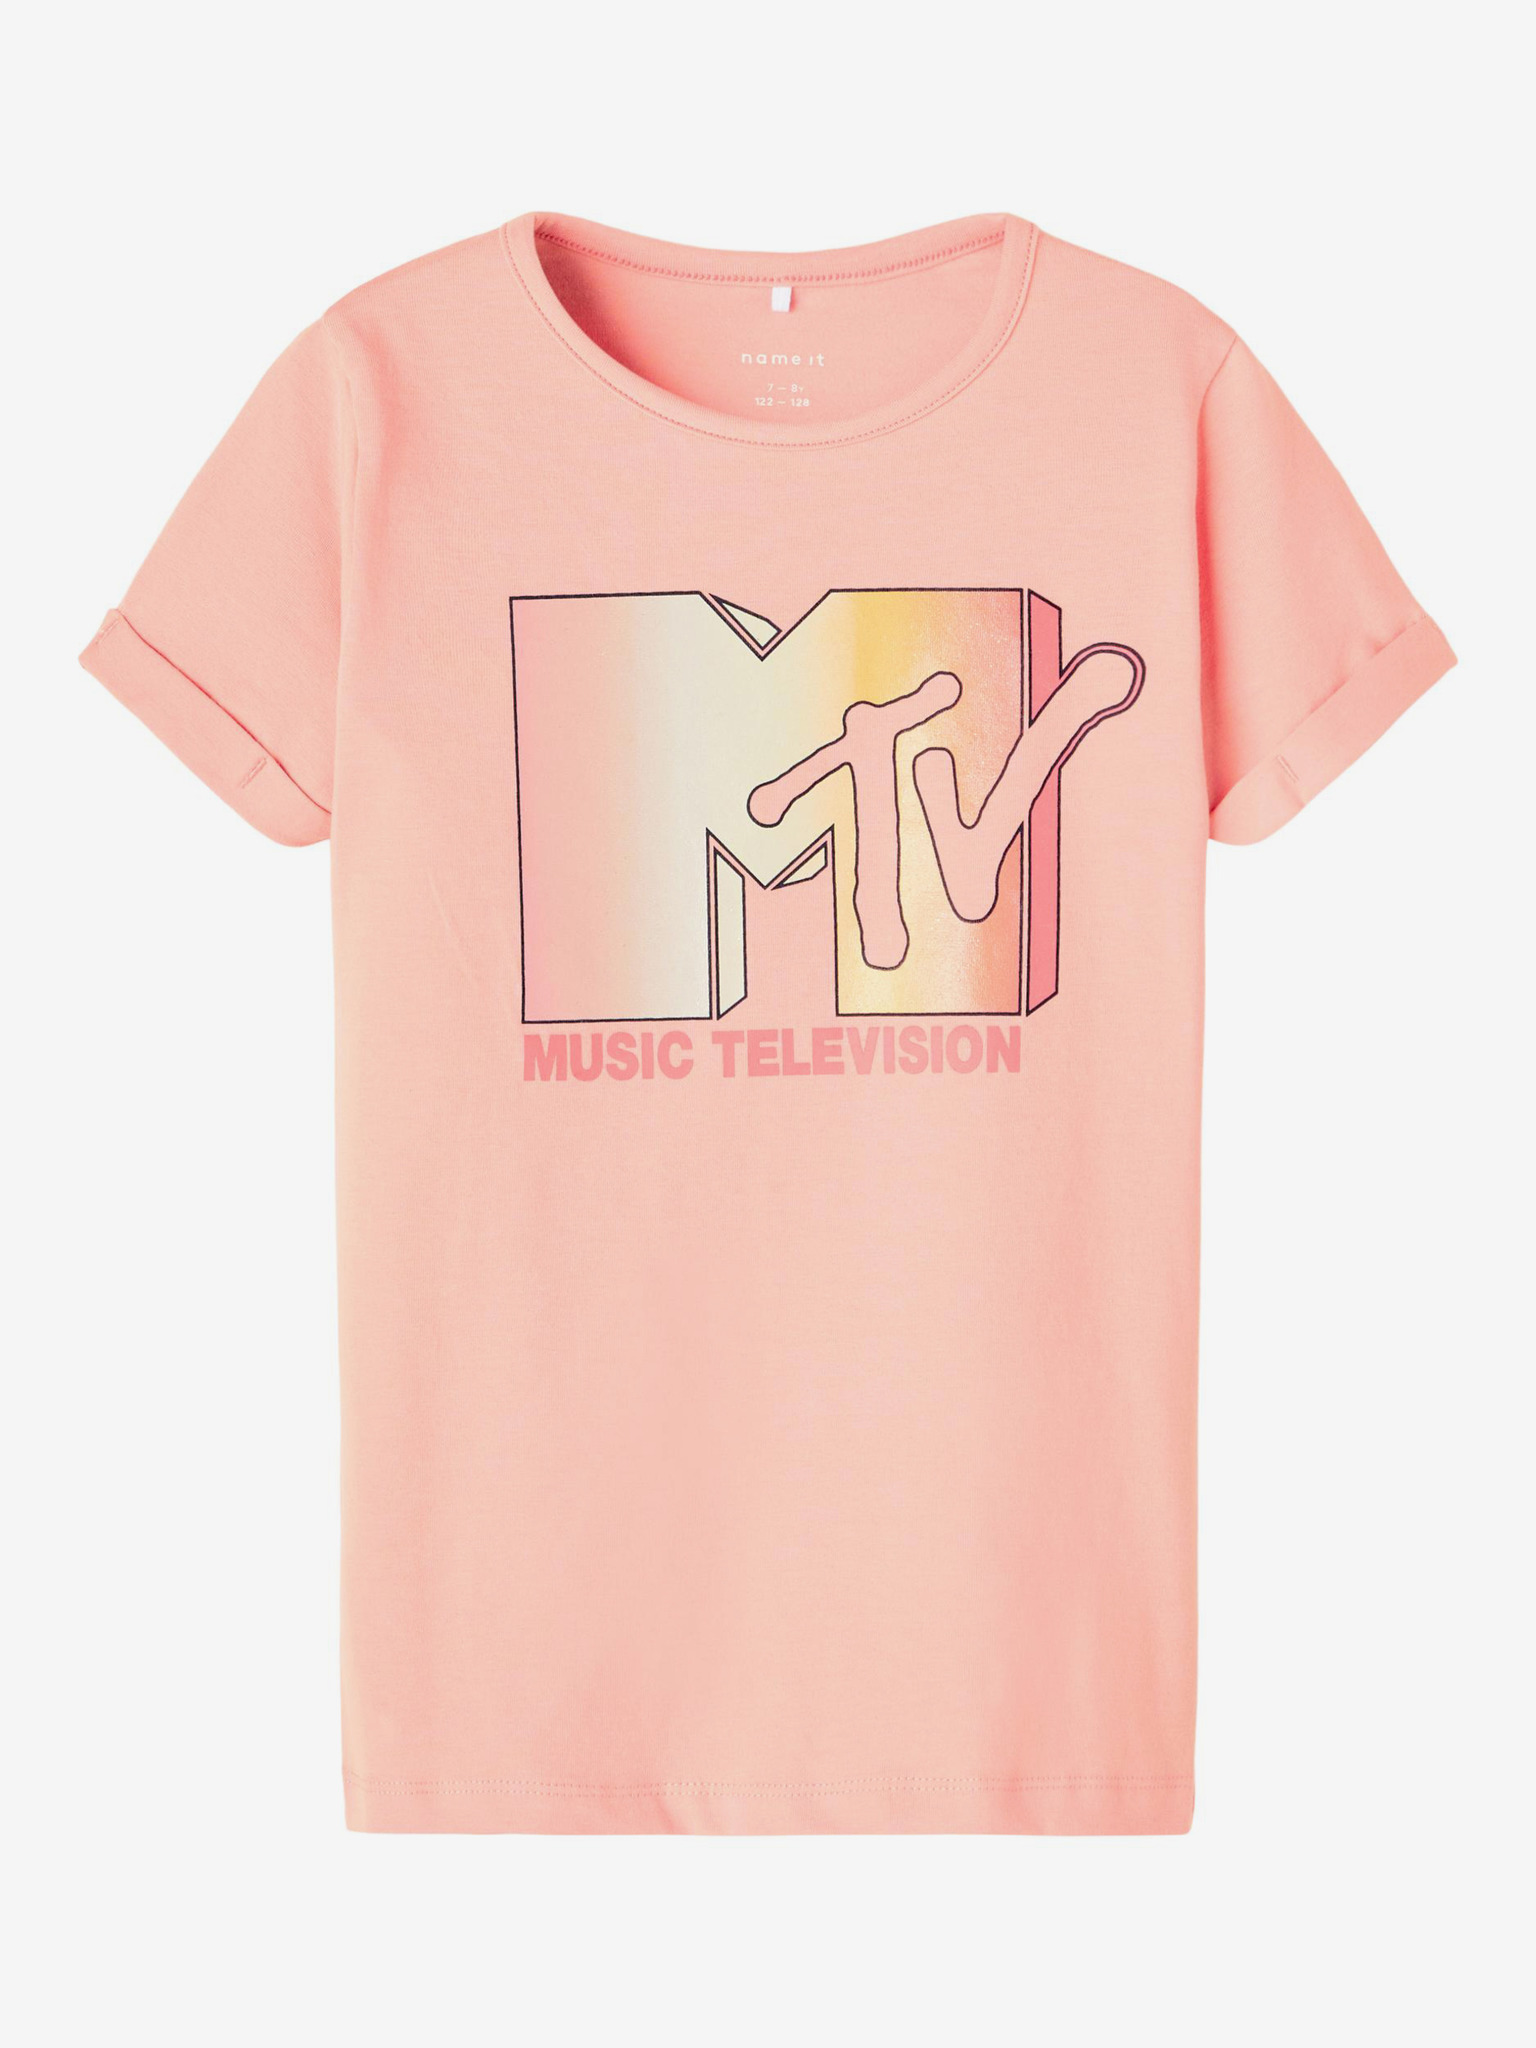 MTV Triko dětské name it